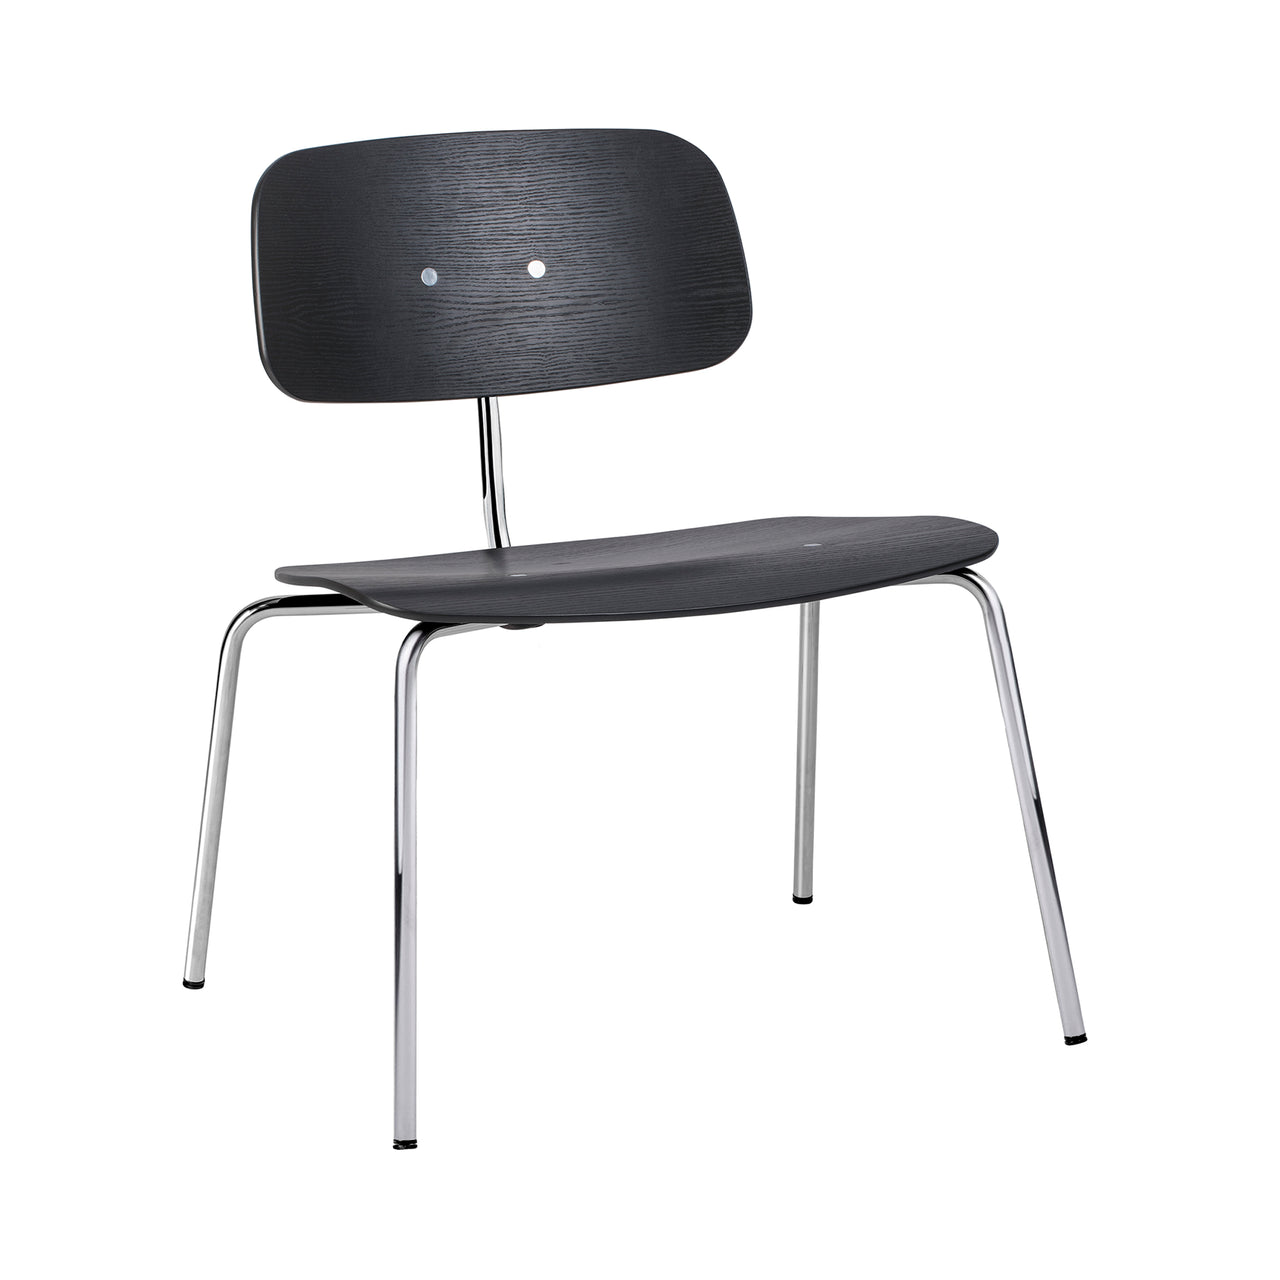 Kevi 2063 Lounge Chair: Black Lazure + Polished Chrome